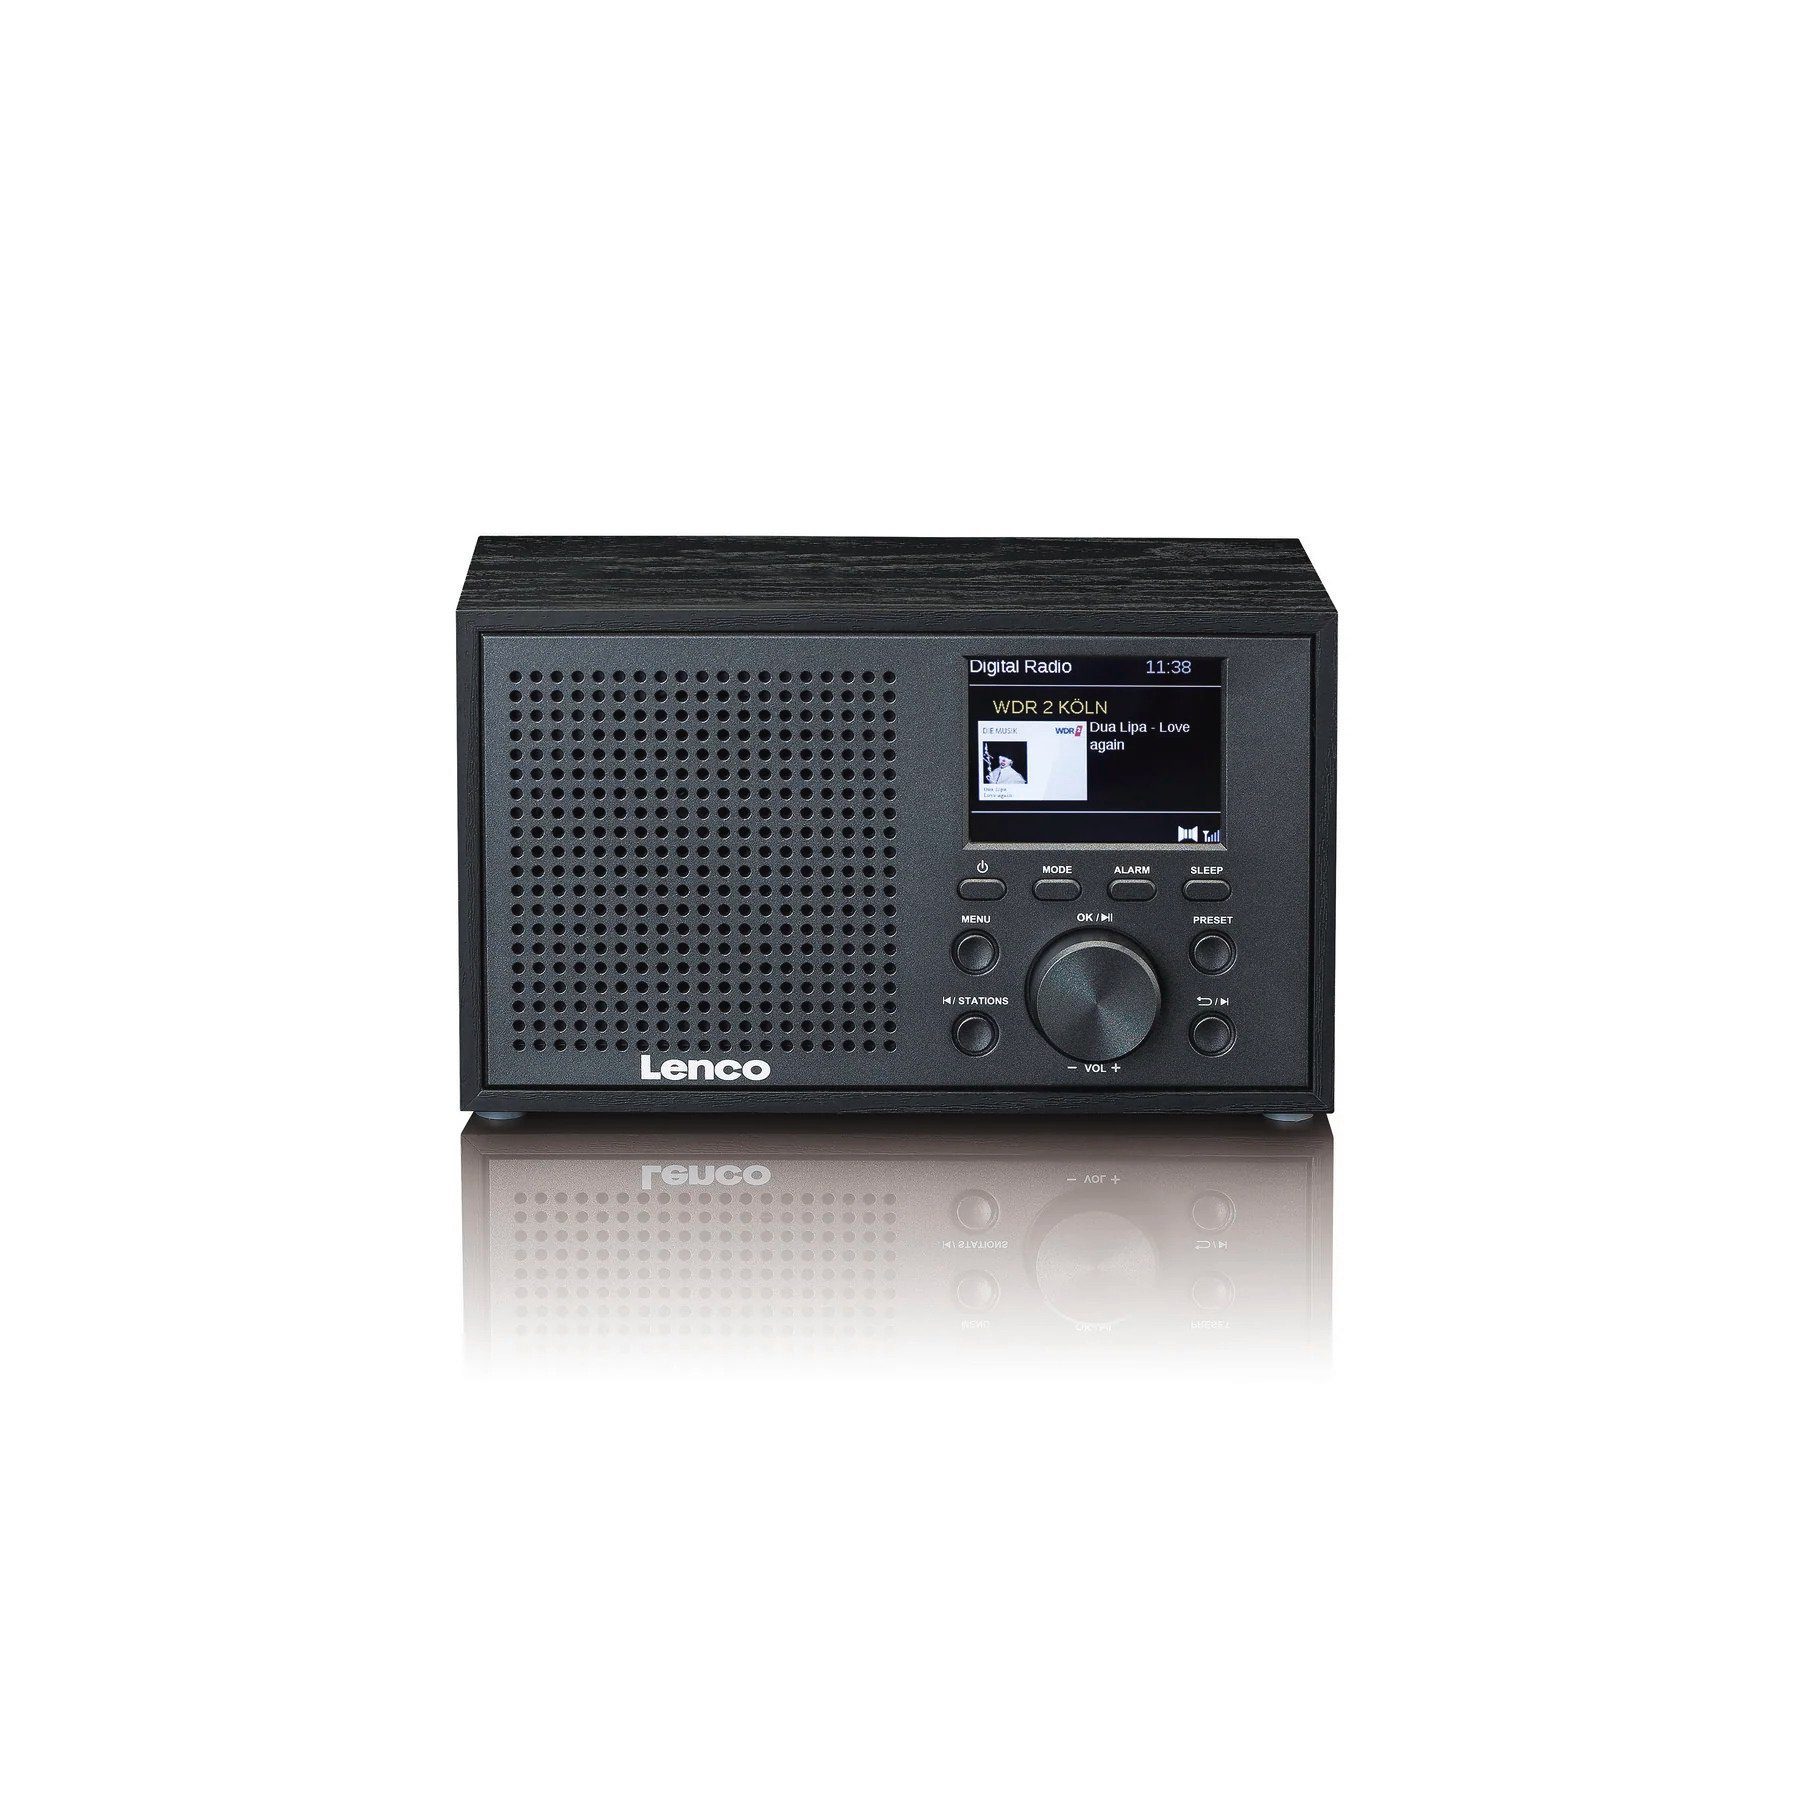 (DAB) mit Lenco (DAB), (Digitalradio 3 Radio W) DAR-017 DAB+/FM Schwarz Digitalradio Bluetooth